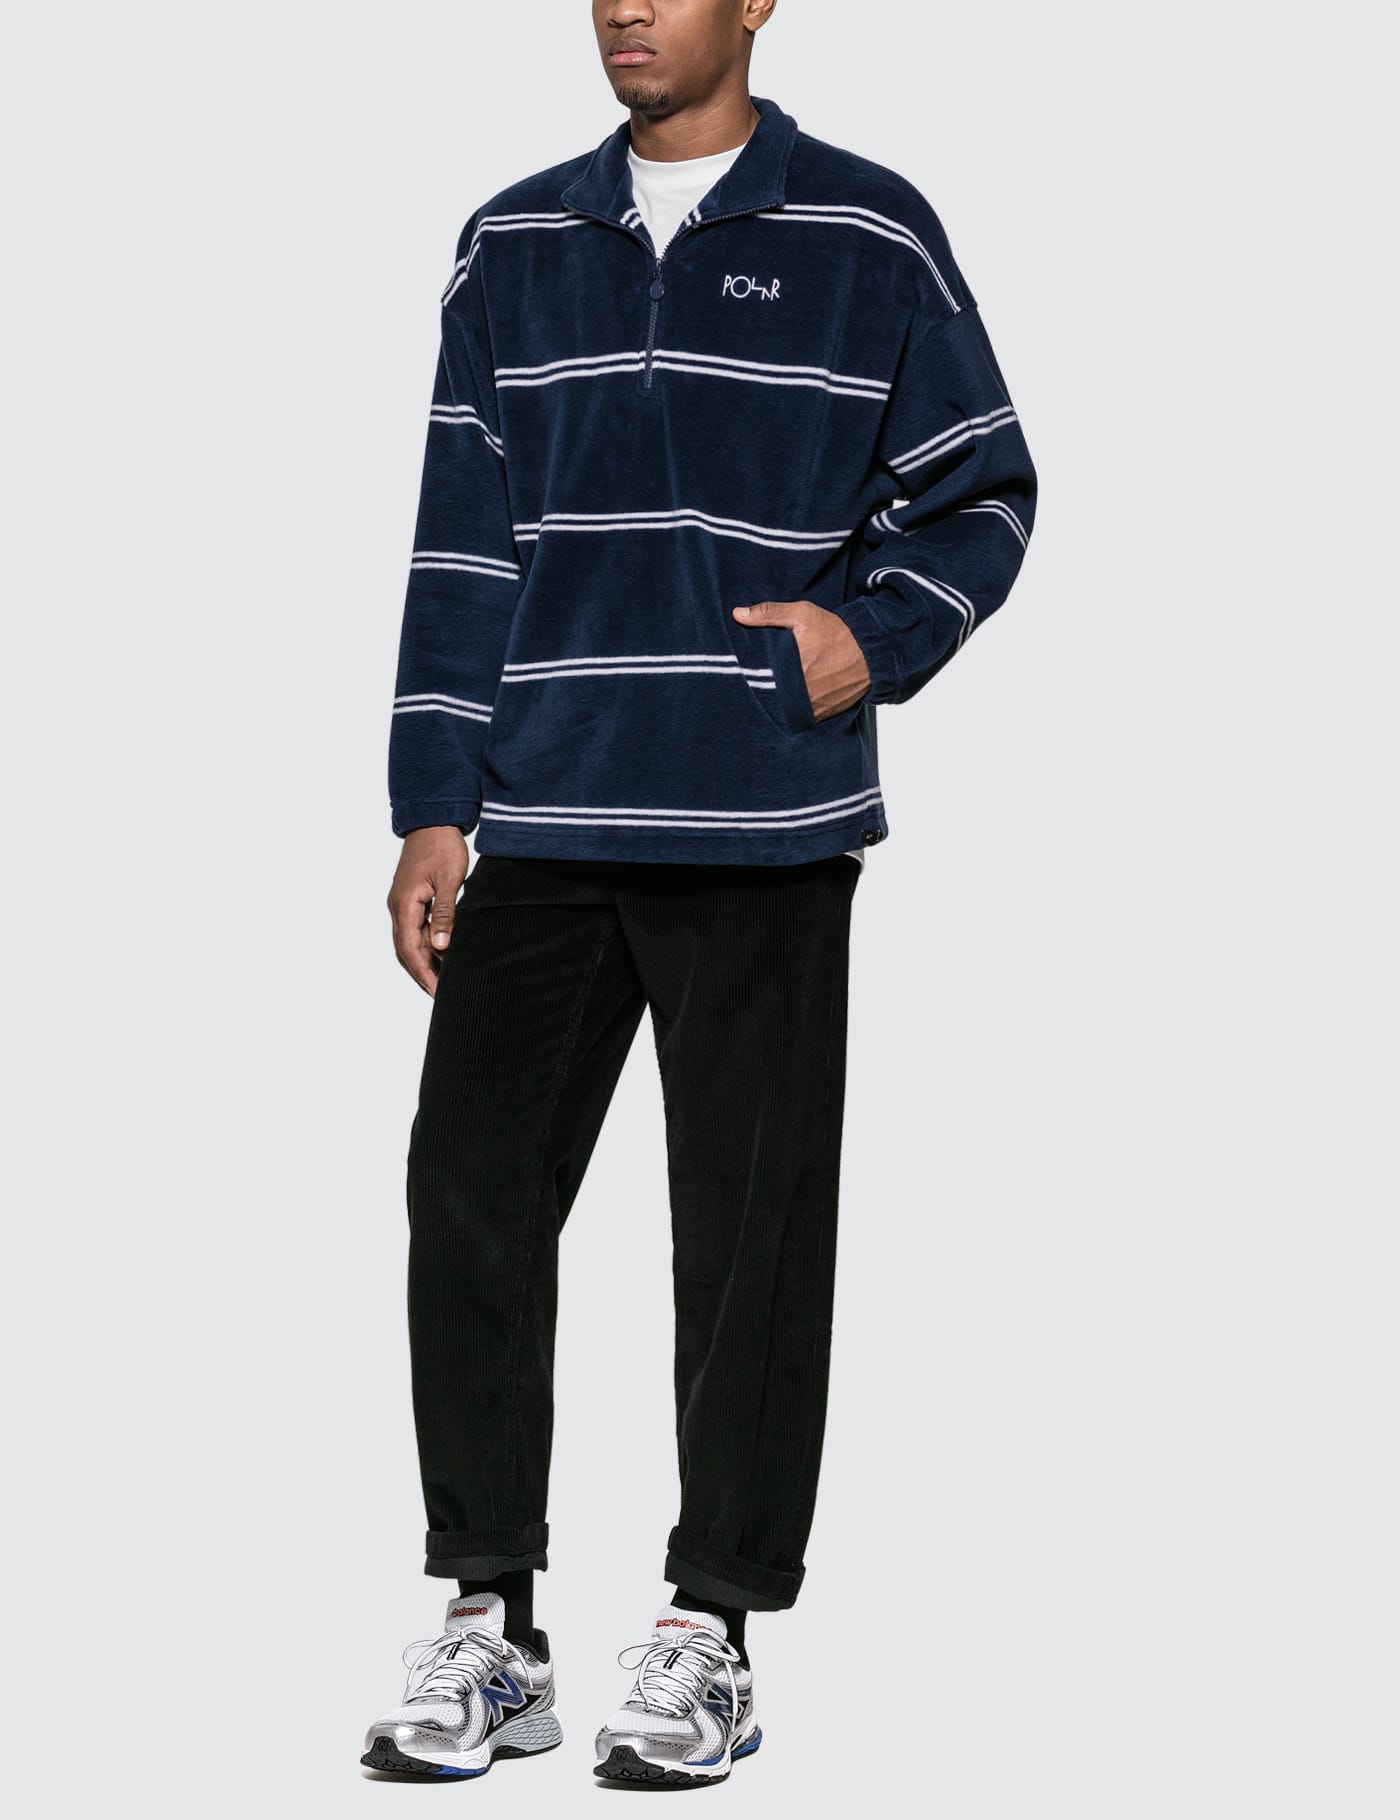 Polar Skate Co. - Striped Fleece Pullover 2.0 | HBX - Globally 